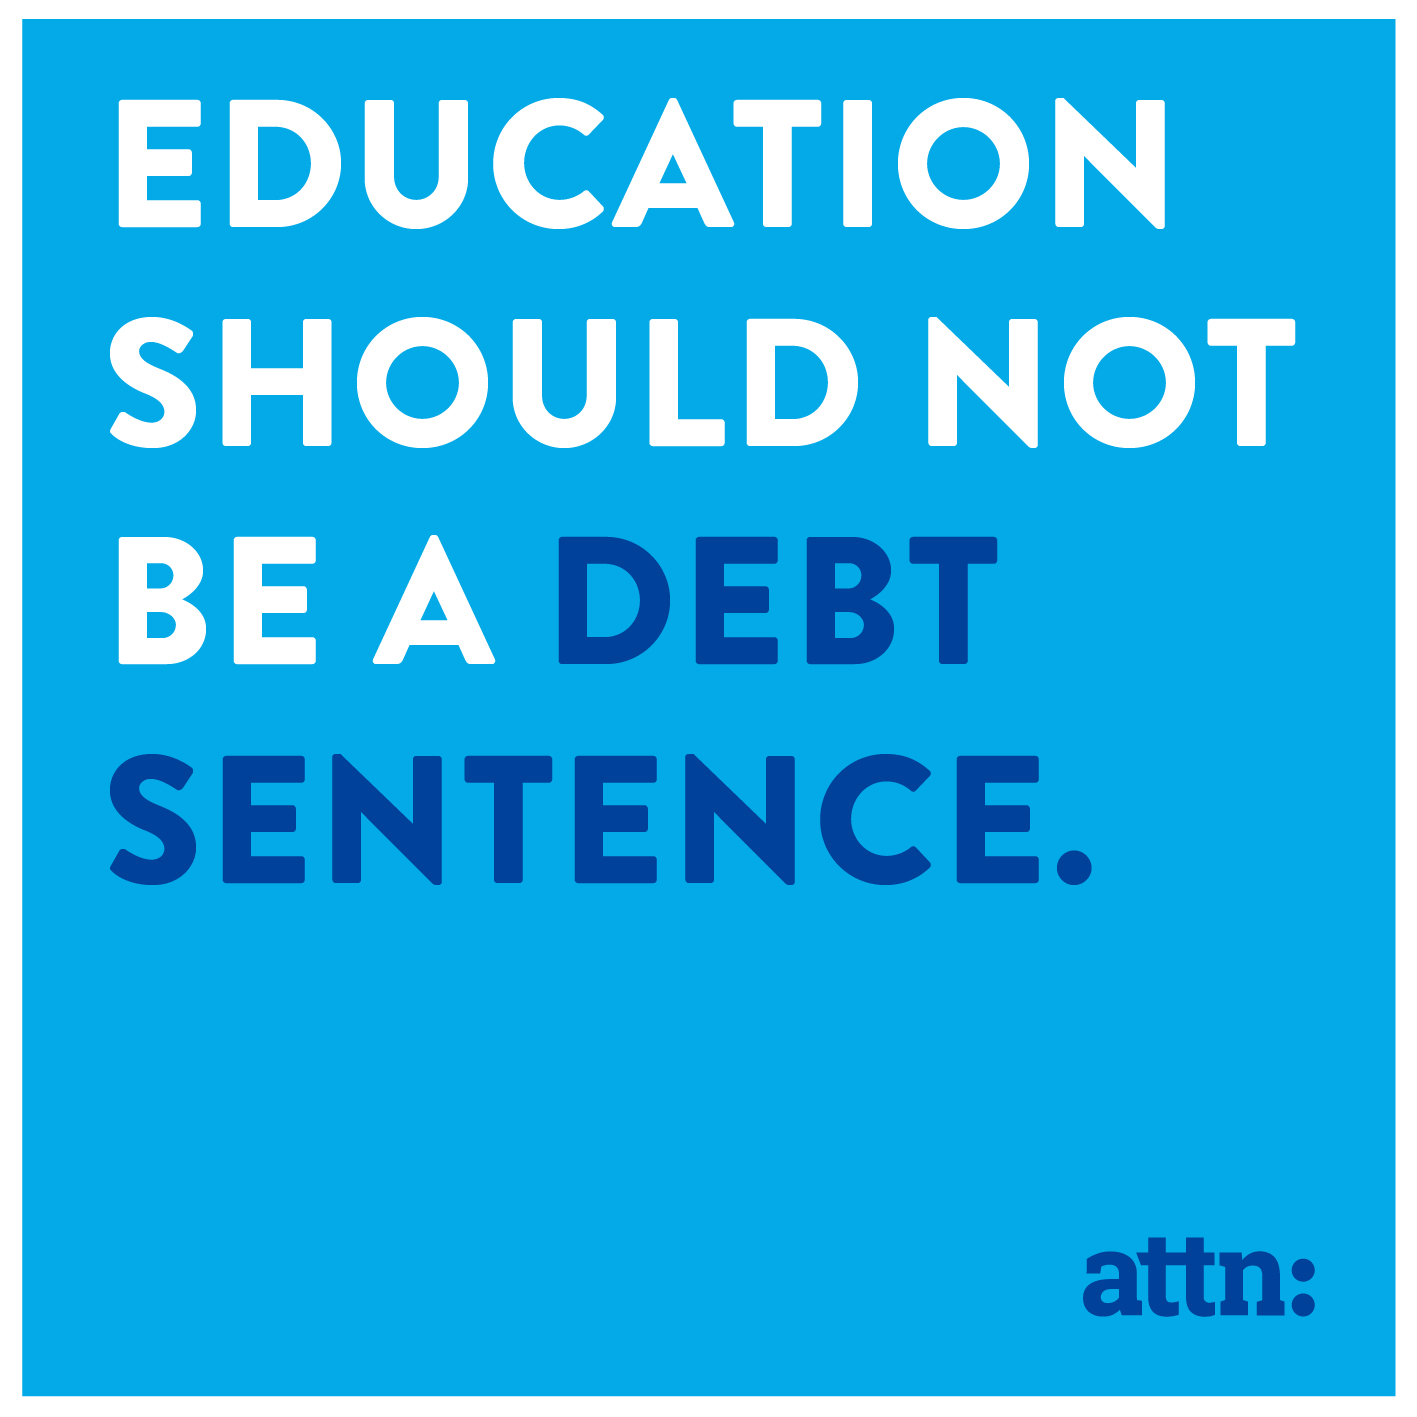 Education as a debt sentence